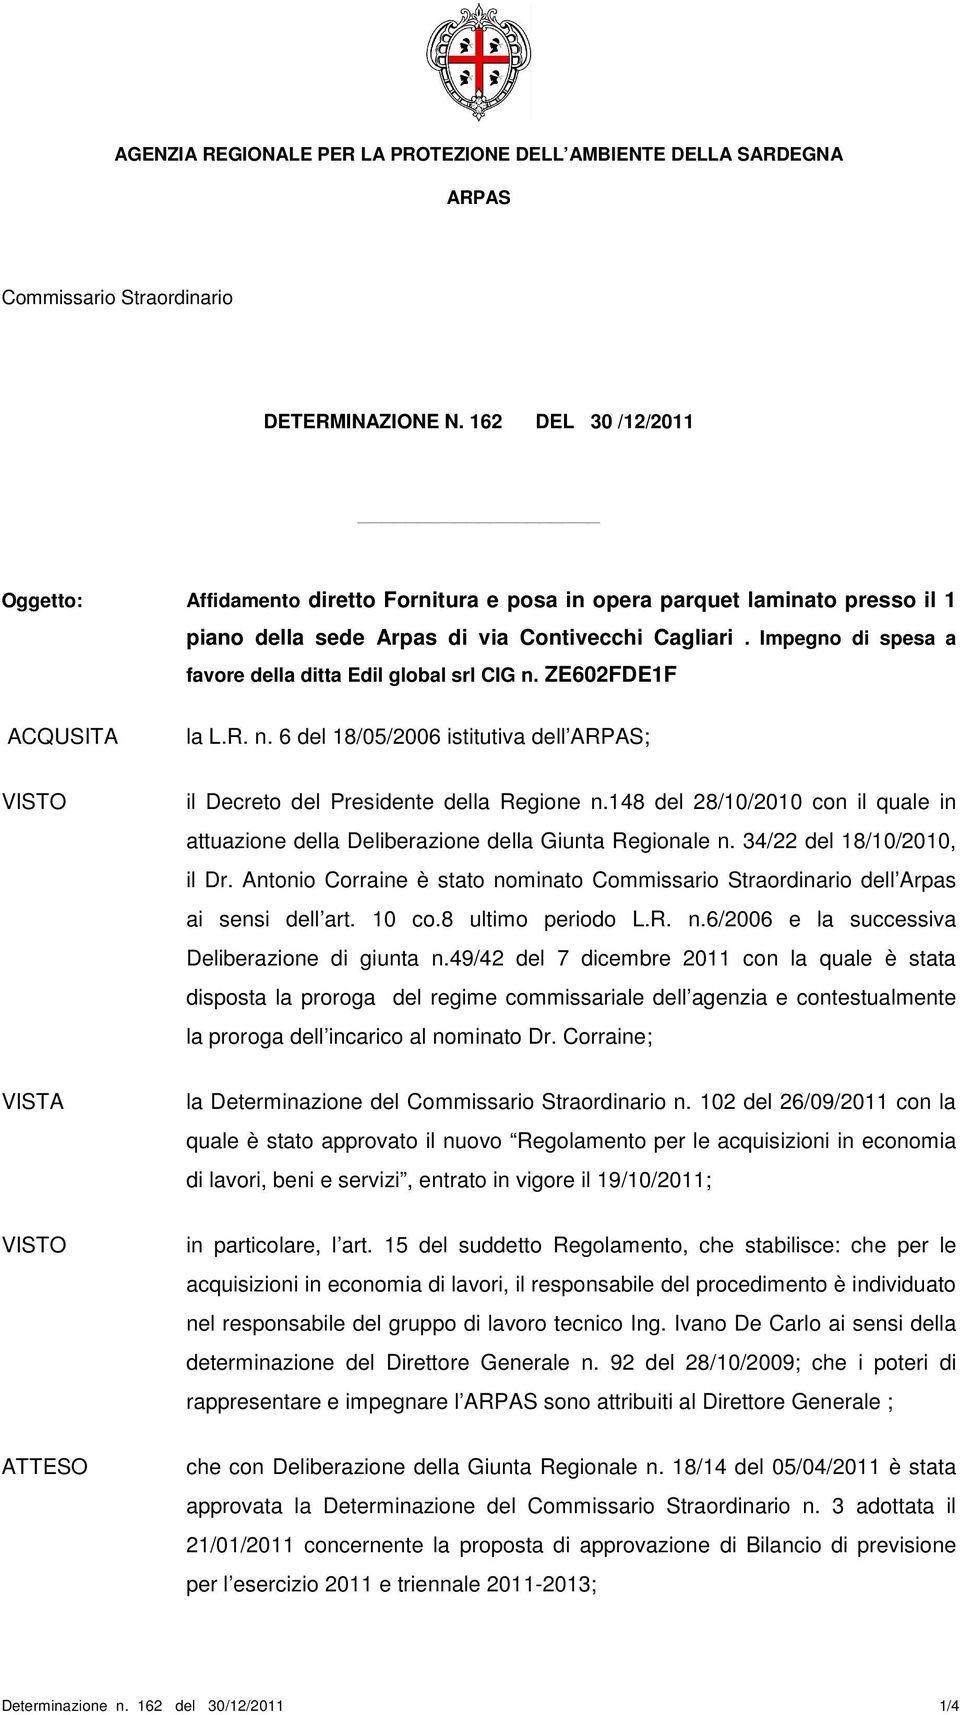 148 del 28/10/2010 con il quale in attuazione della Deliberazione della Giunta Regionale n. 34/22 del 18/10/2010, il Dr. Antonio Corraine è stato nominato dell Arpas ai sensi dell art. 10 co.